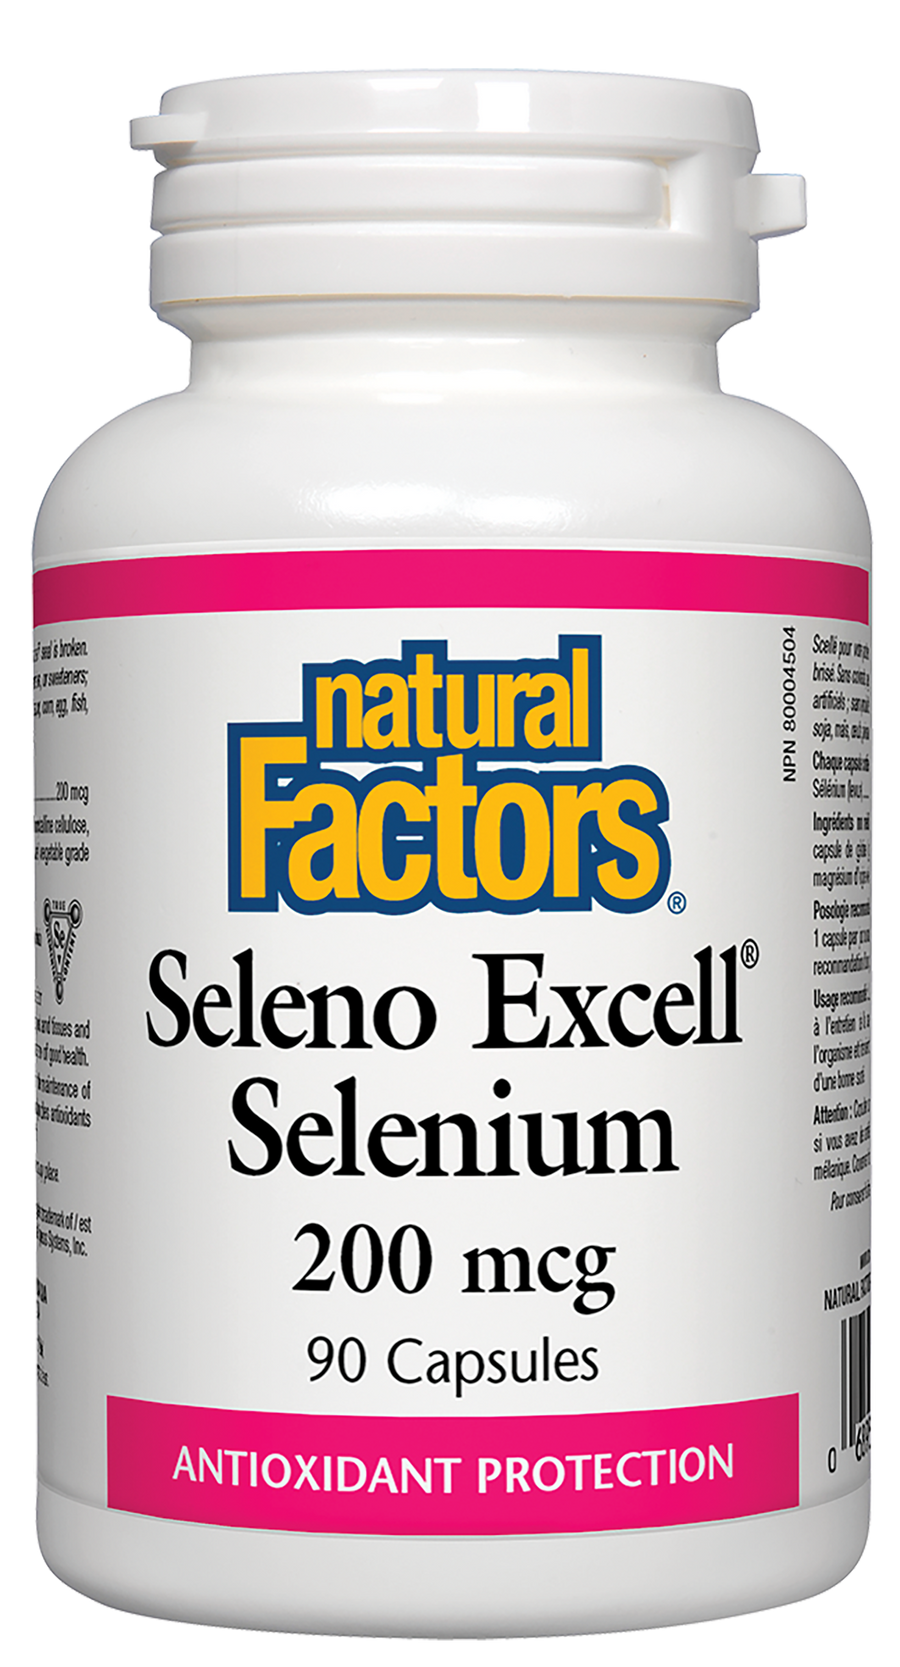 Natural Factors SelenoExcell Selenium 200 mcg 90 Capsules